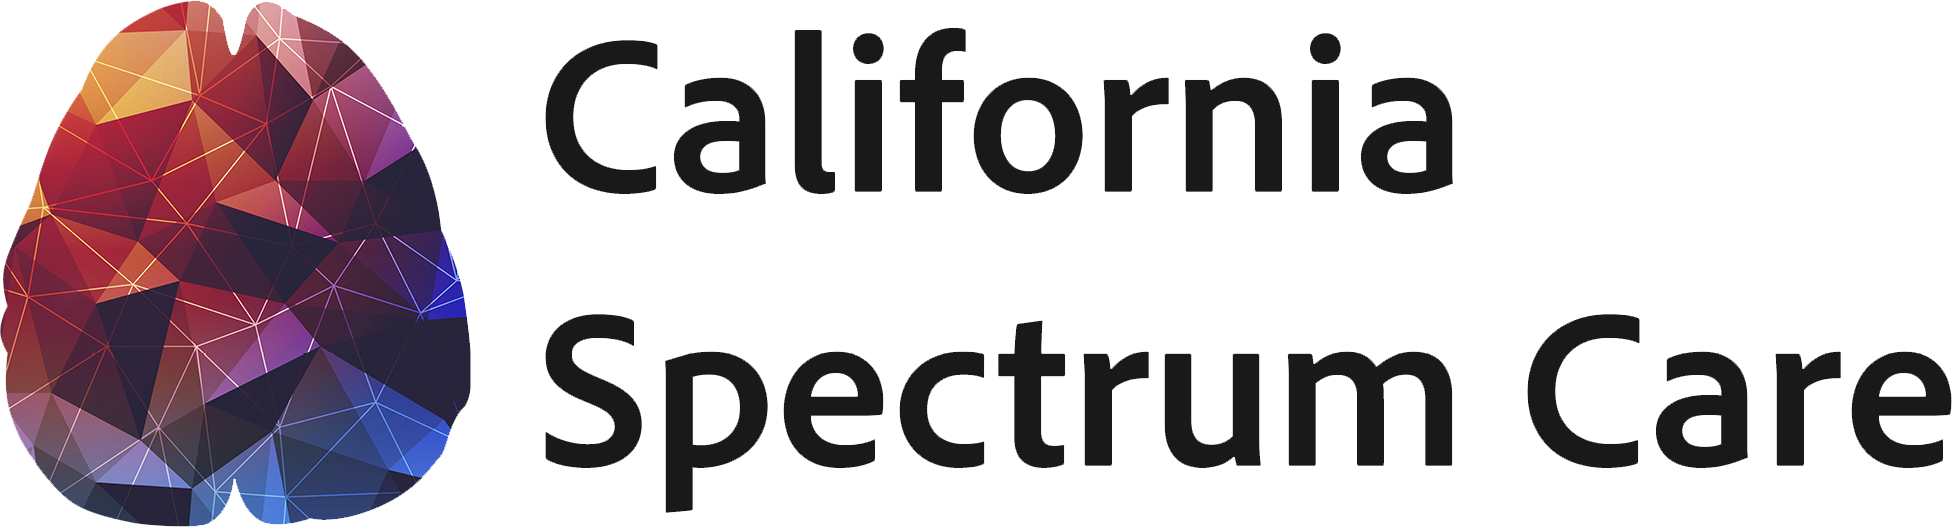 California Spectrum Care